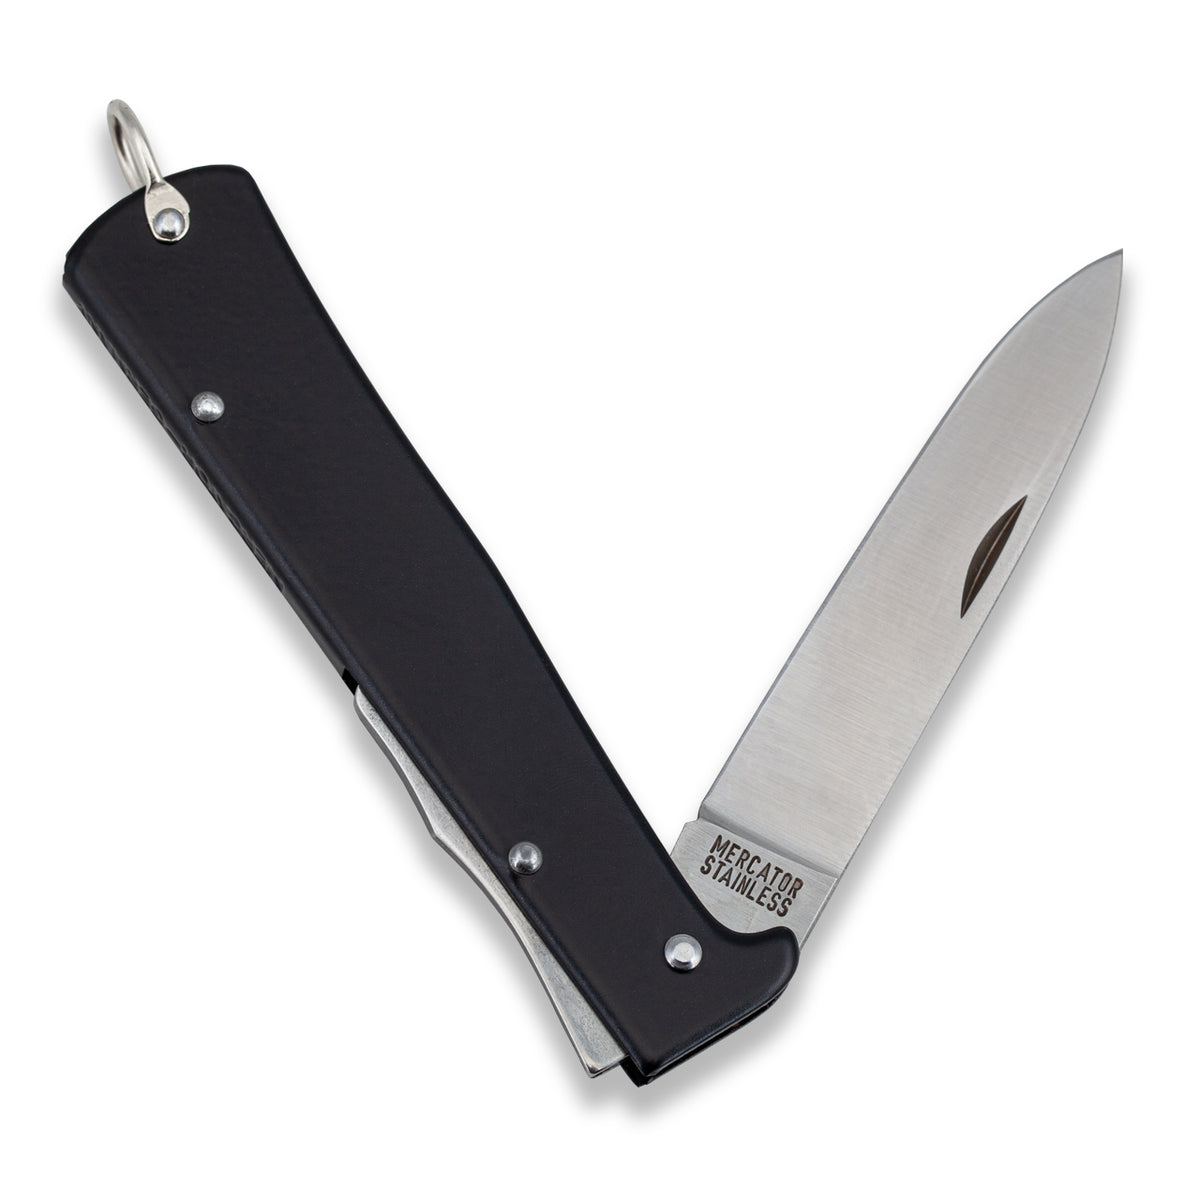 Otter Mercator Lockback SS Pocket Knife - 3.25 Satin Finish Stainless  Steel Blade, Black Stainless Handle